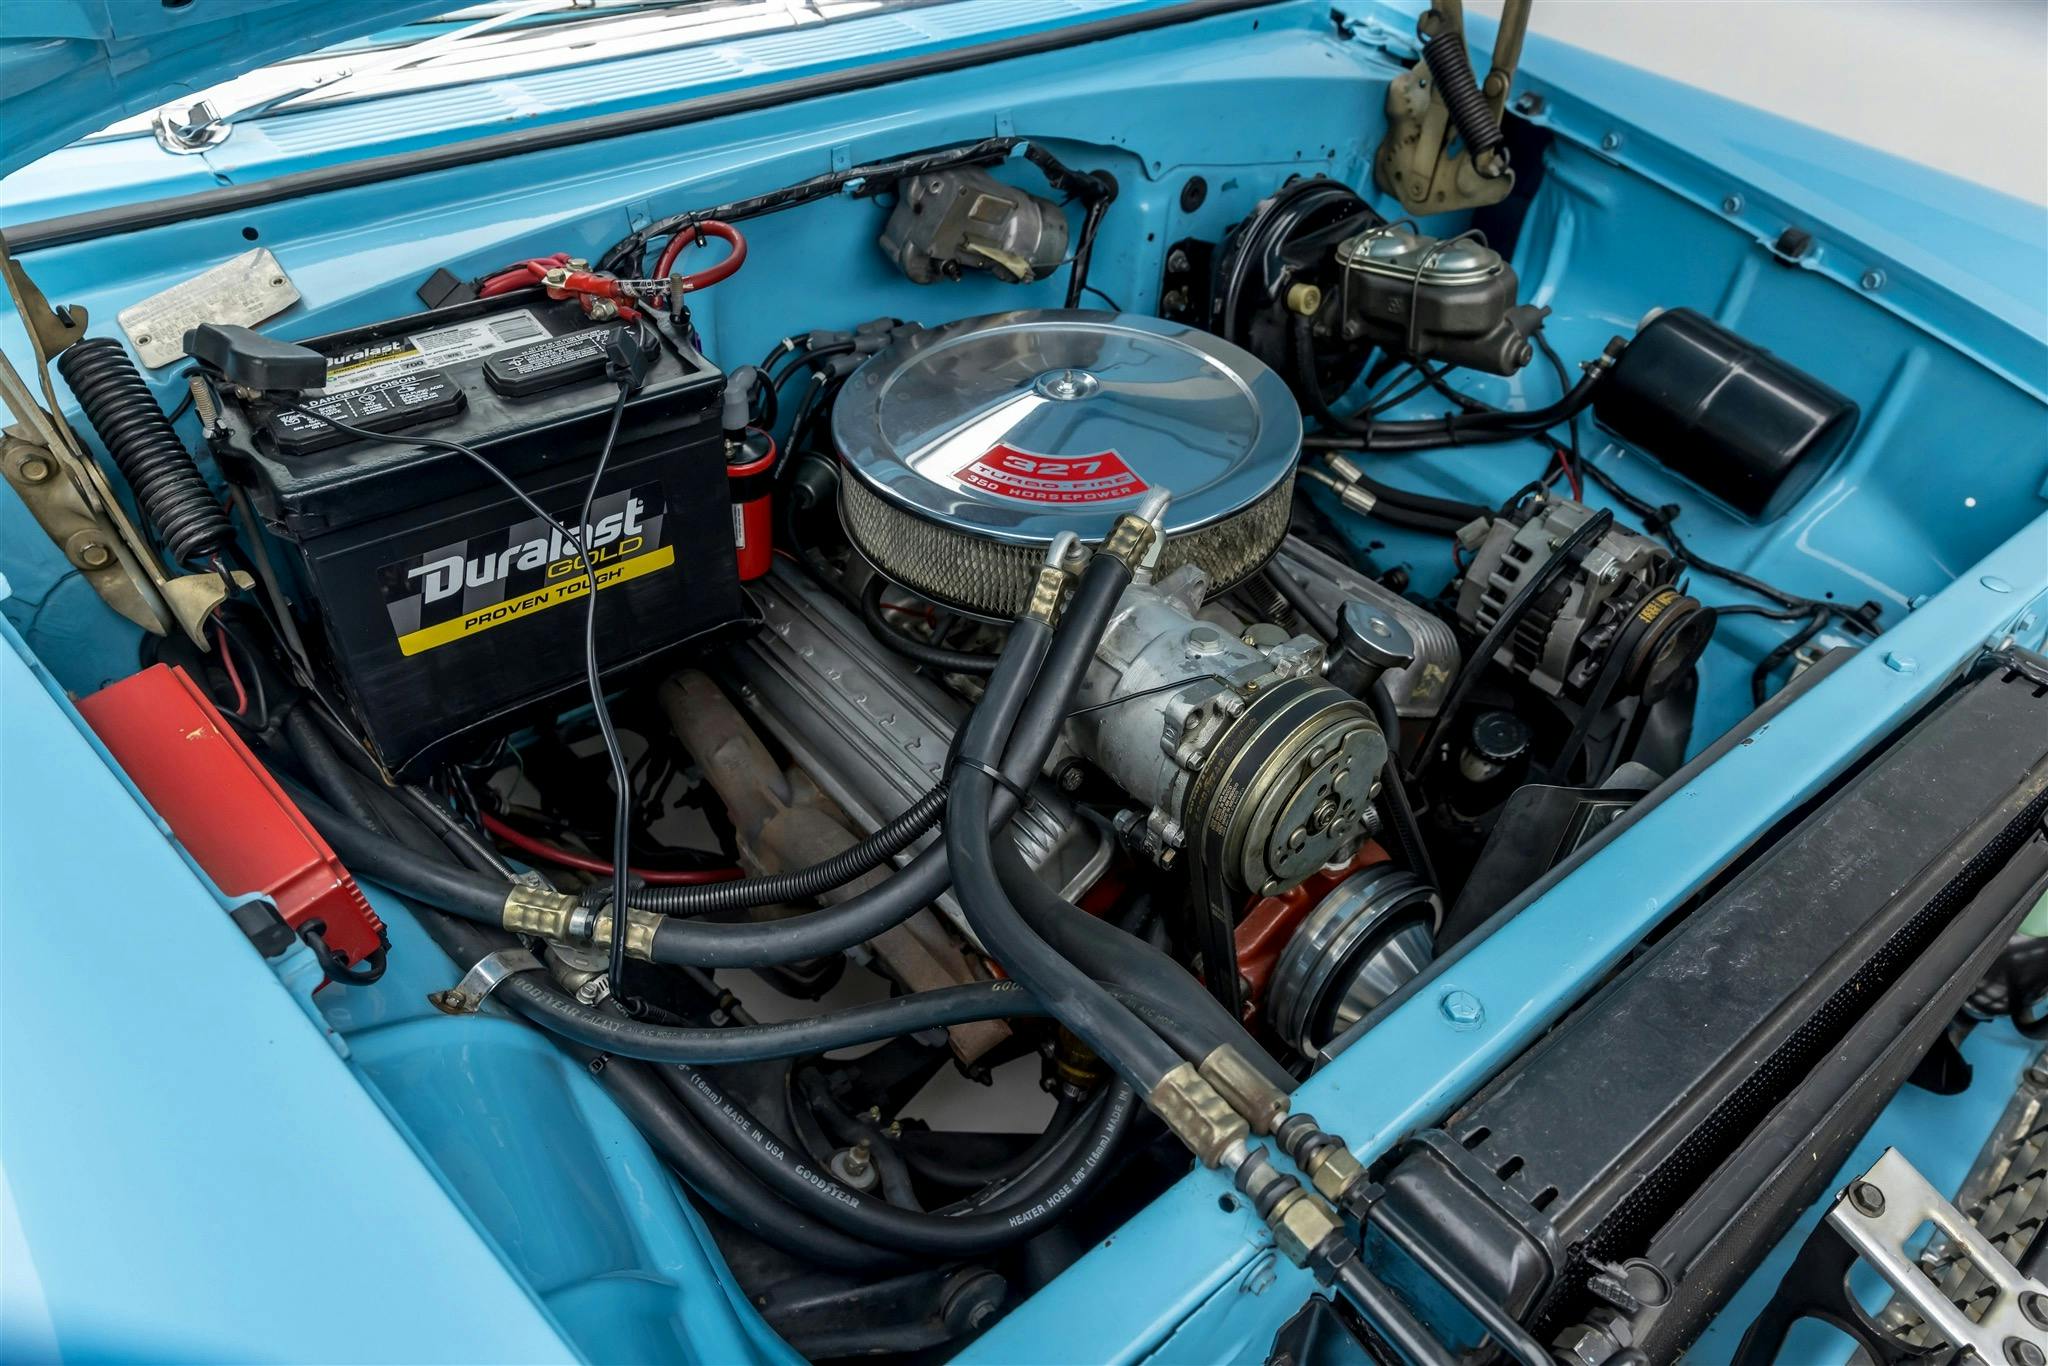 Bruce Willis 1955 Chevrolet Bel Air Nomad engine bay